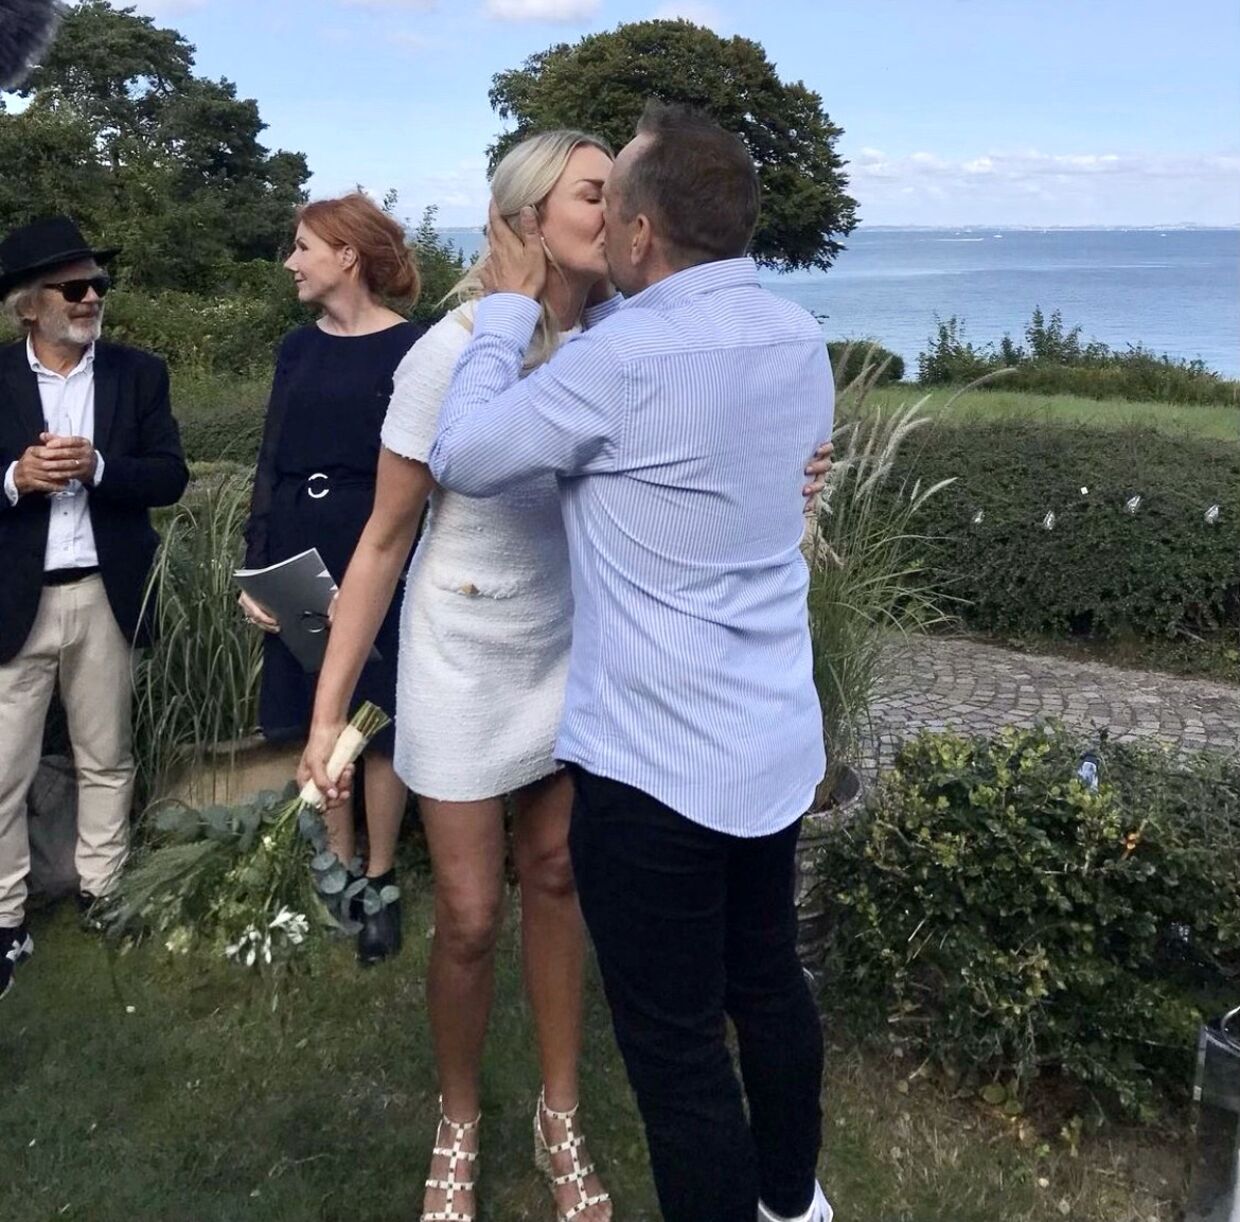 I august sidste år blev Jannie og Martin Buch Thorborg gift. Hun fik et gedigent kys af sin mand efter vielsen. Privatfoto